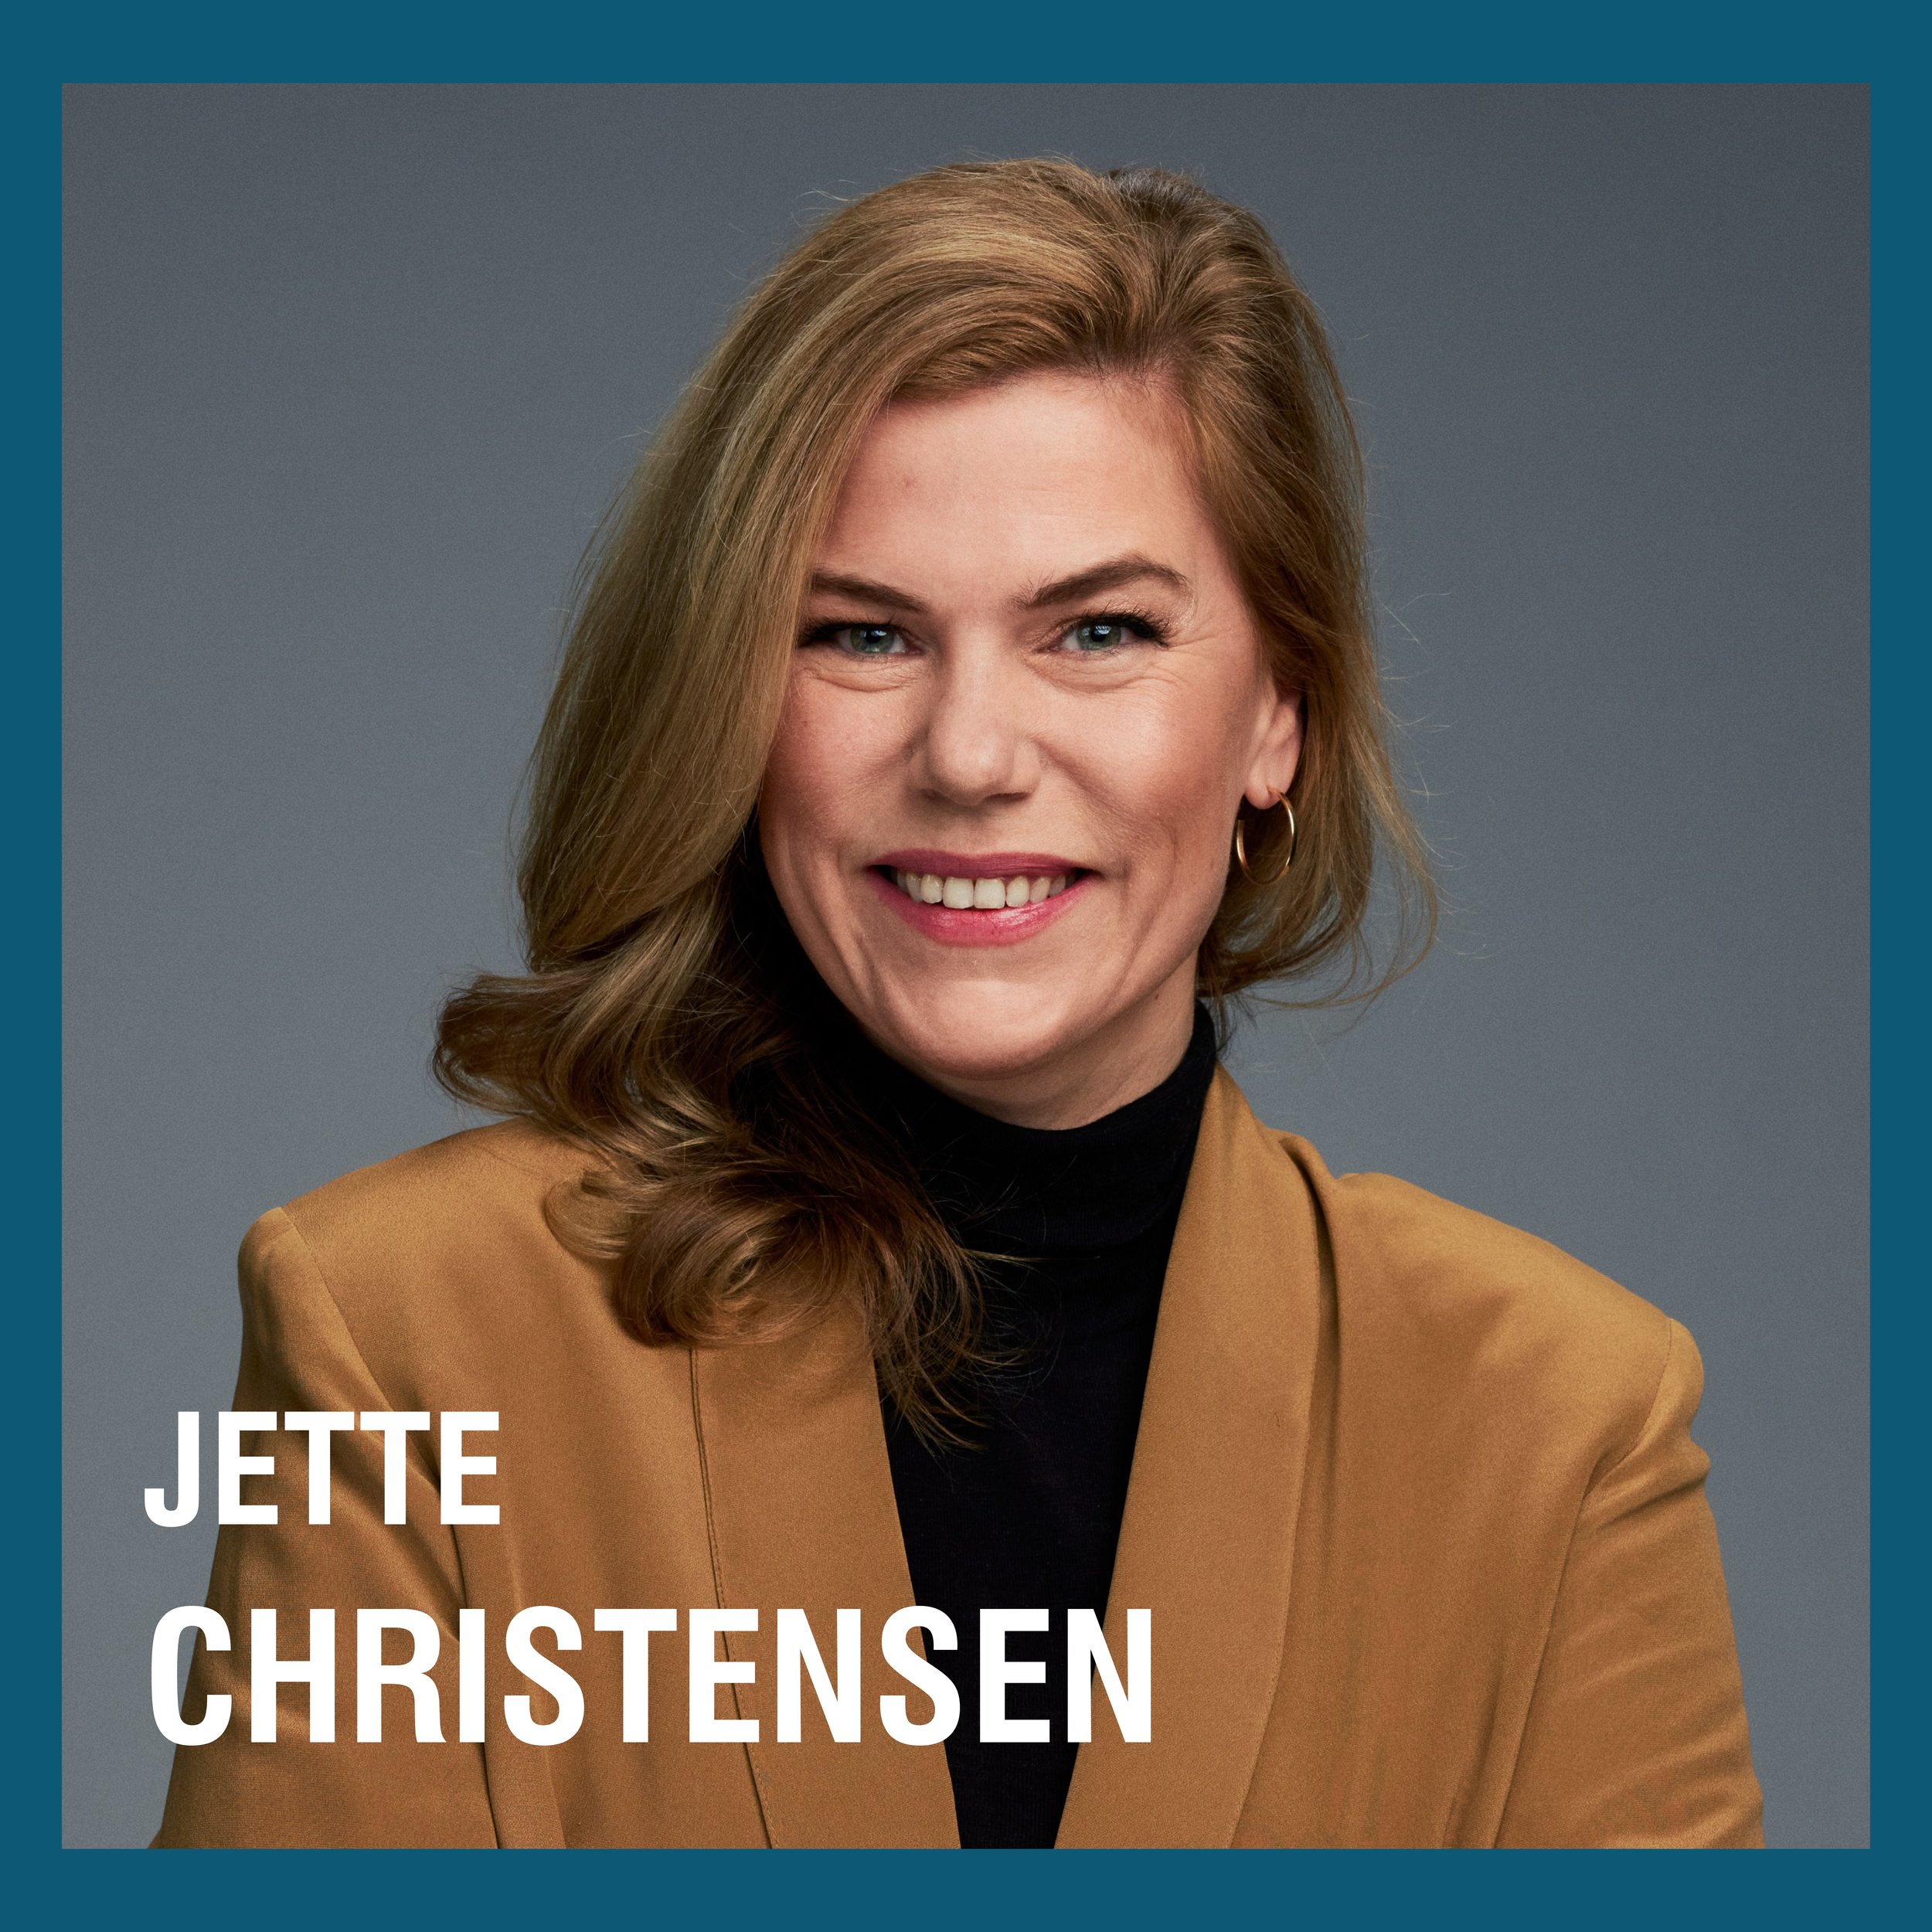 Komprimert Jette Christensen uten logo SoMe kampanje.jpg